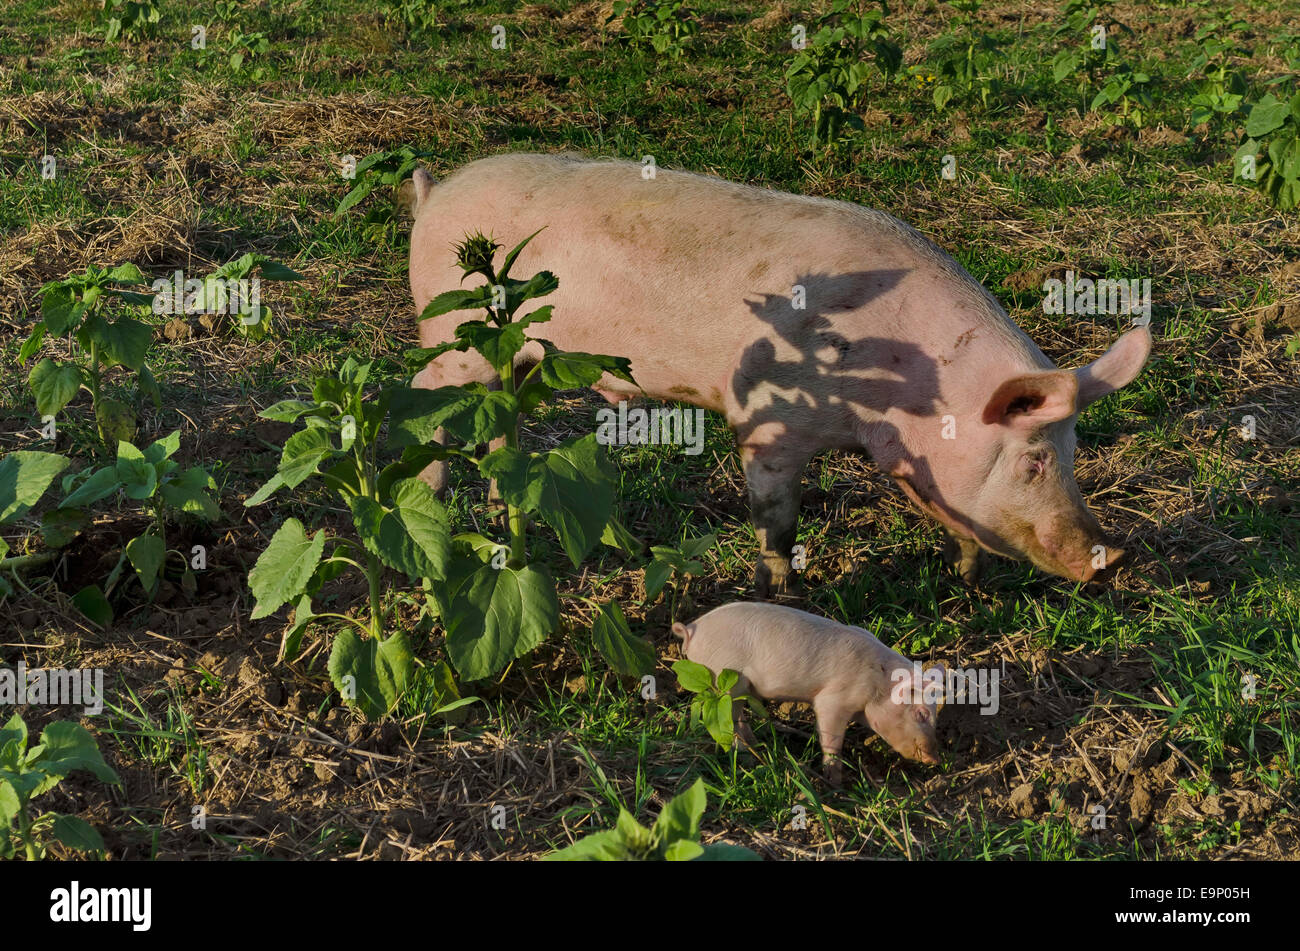 Sow biologico e la sua suinetti mangiare l'erba fresca in un prato. Foto Stock